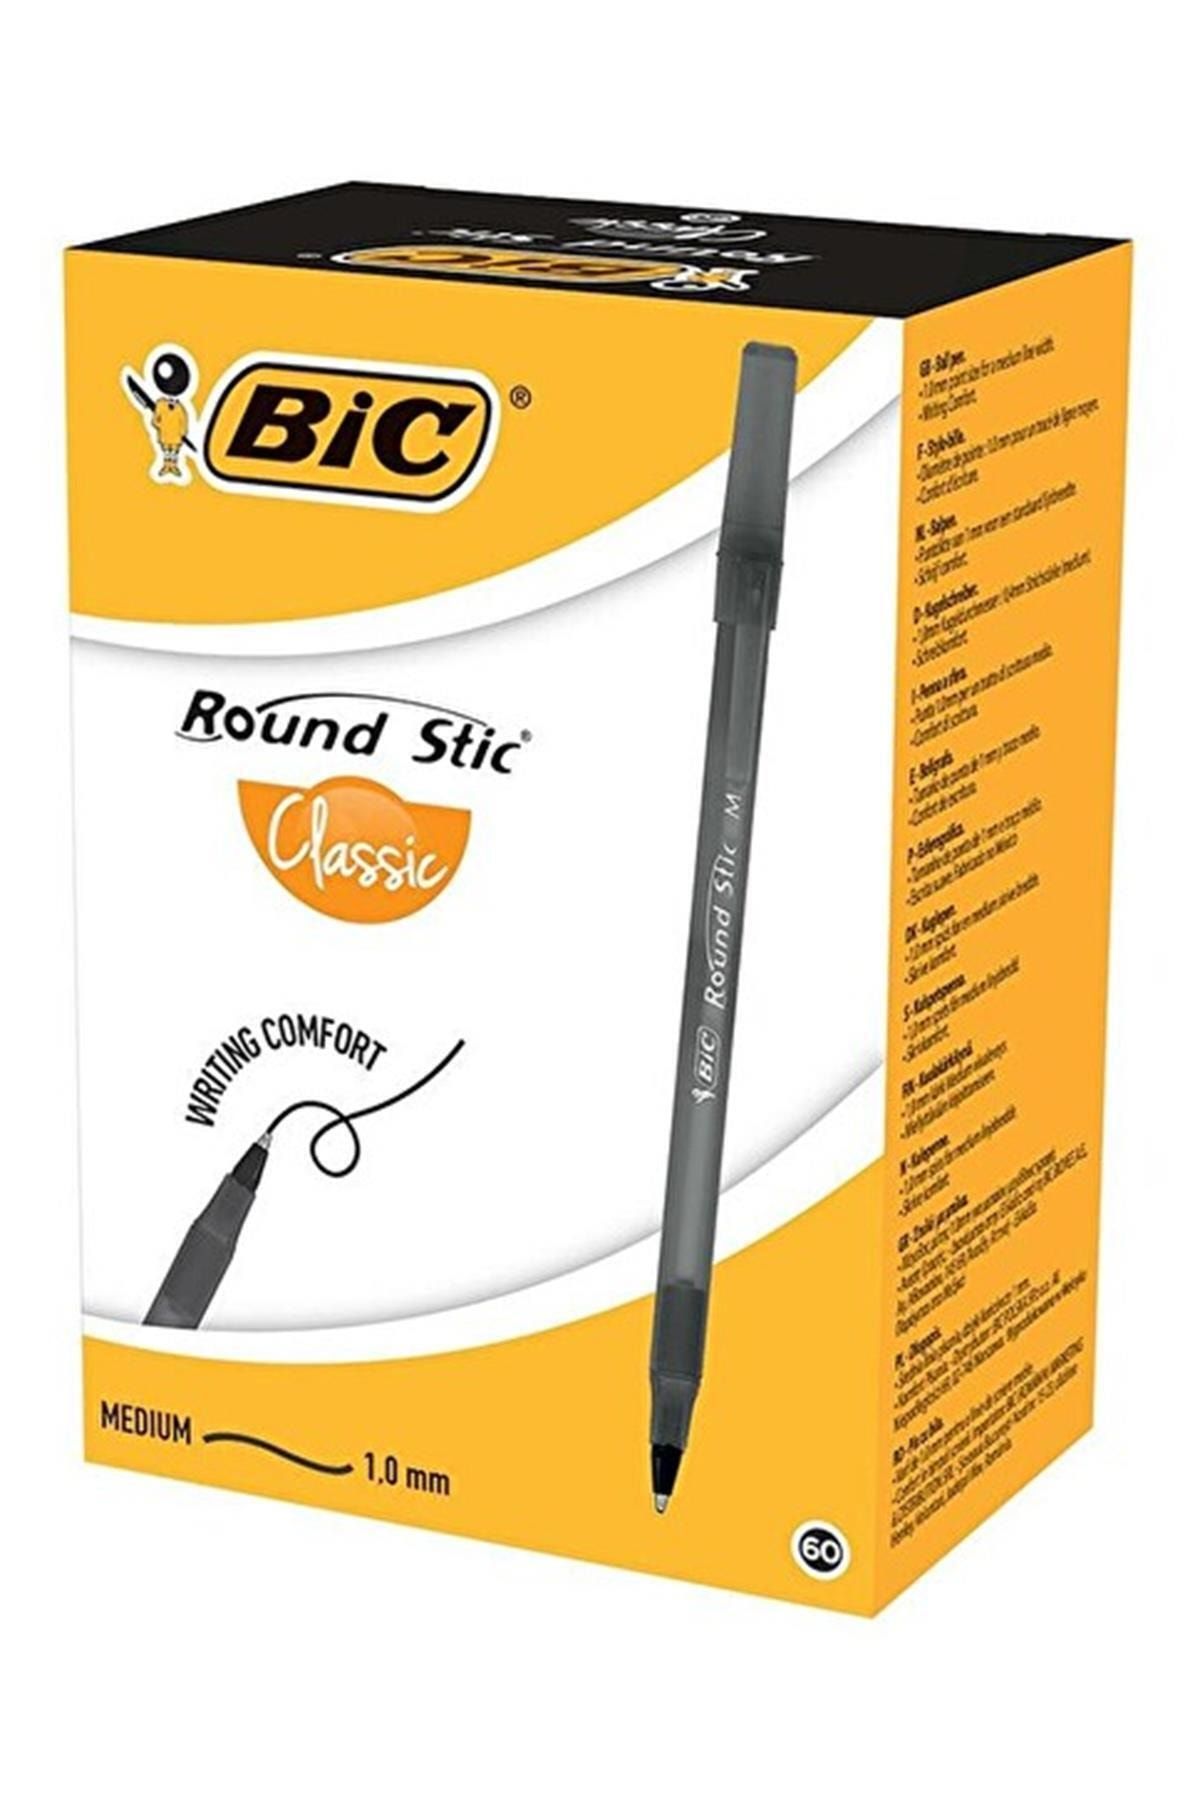 Bic Marka: Bıc Round Stıc Tükenmez Kalem Siyah 60'lı Paket Kategori: Tükenmez Kalemler